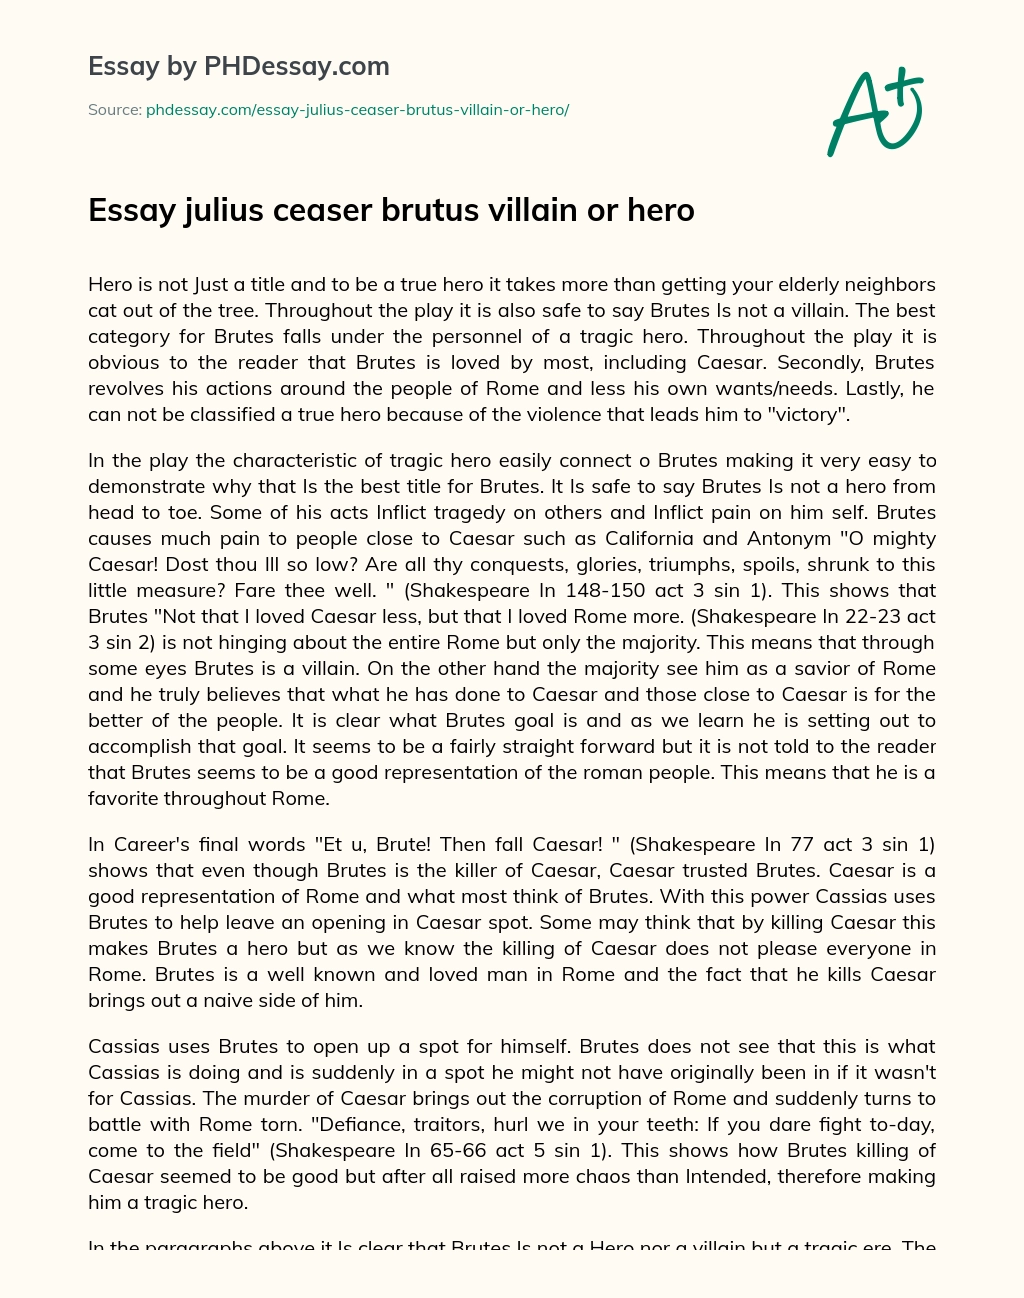 Essay julius ceaser brutus villain or hero essay